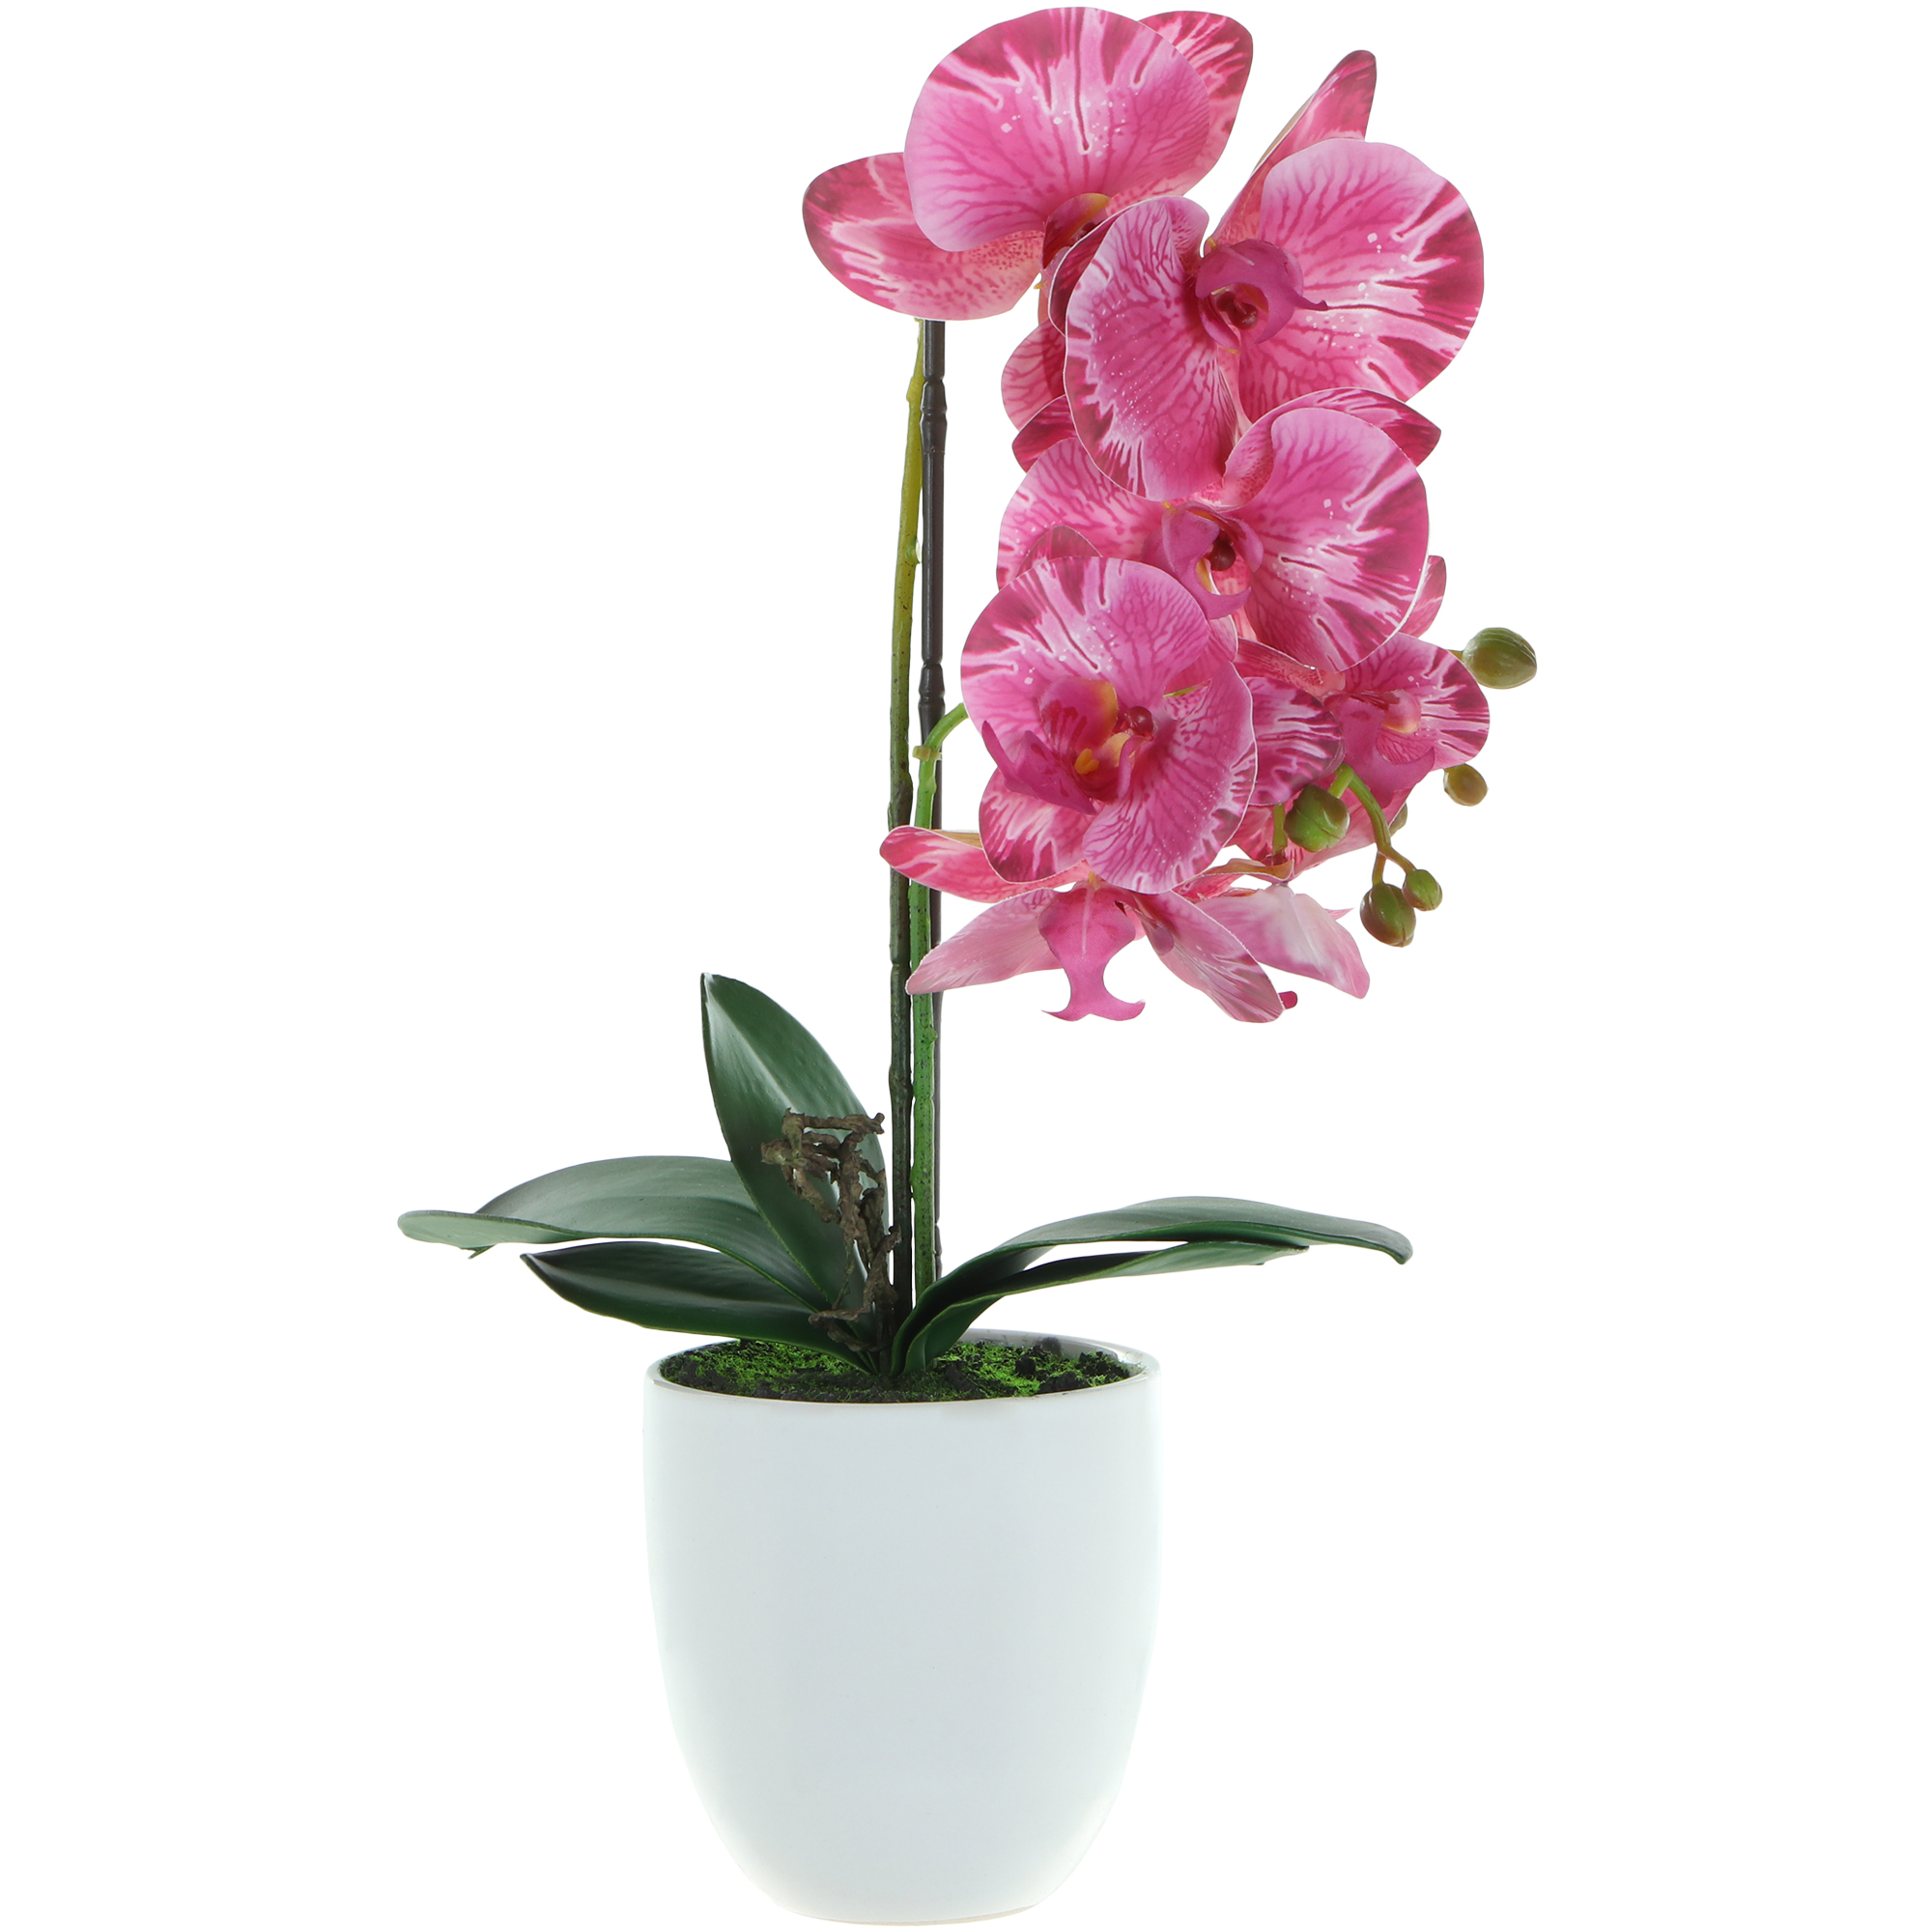 Цветок искусственный в горшке Fuzhou Light орхидея 2 цвета 54 см цветок искусственный fuzhou light орхидея бело розовая в горшке 54 см